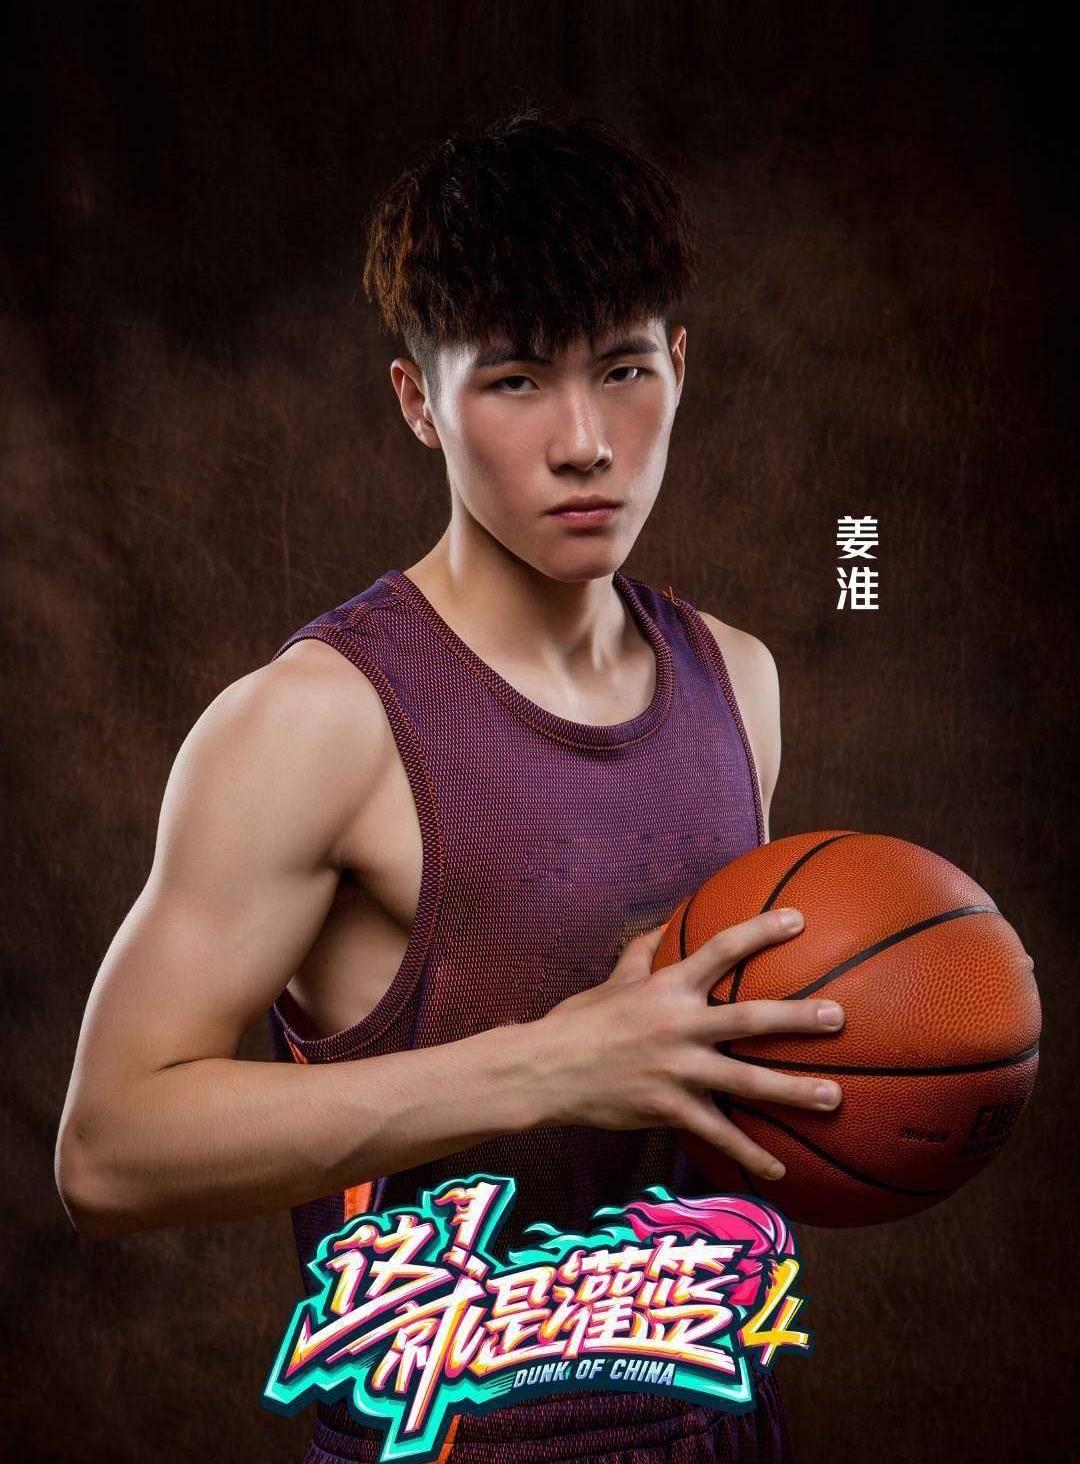 第23届cuba中国大学生篮球联赛中曾单场砍下51分,姜淮(22岁)东北师范